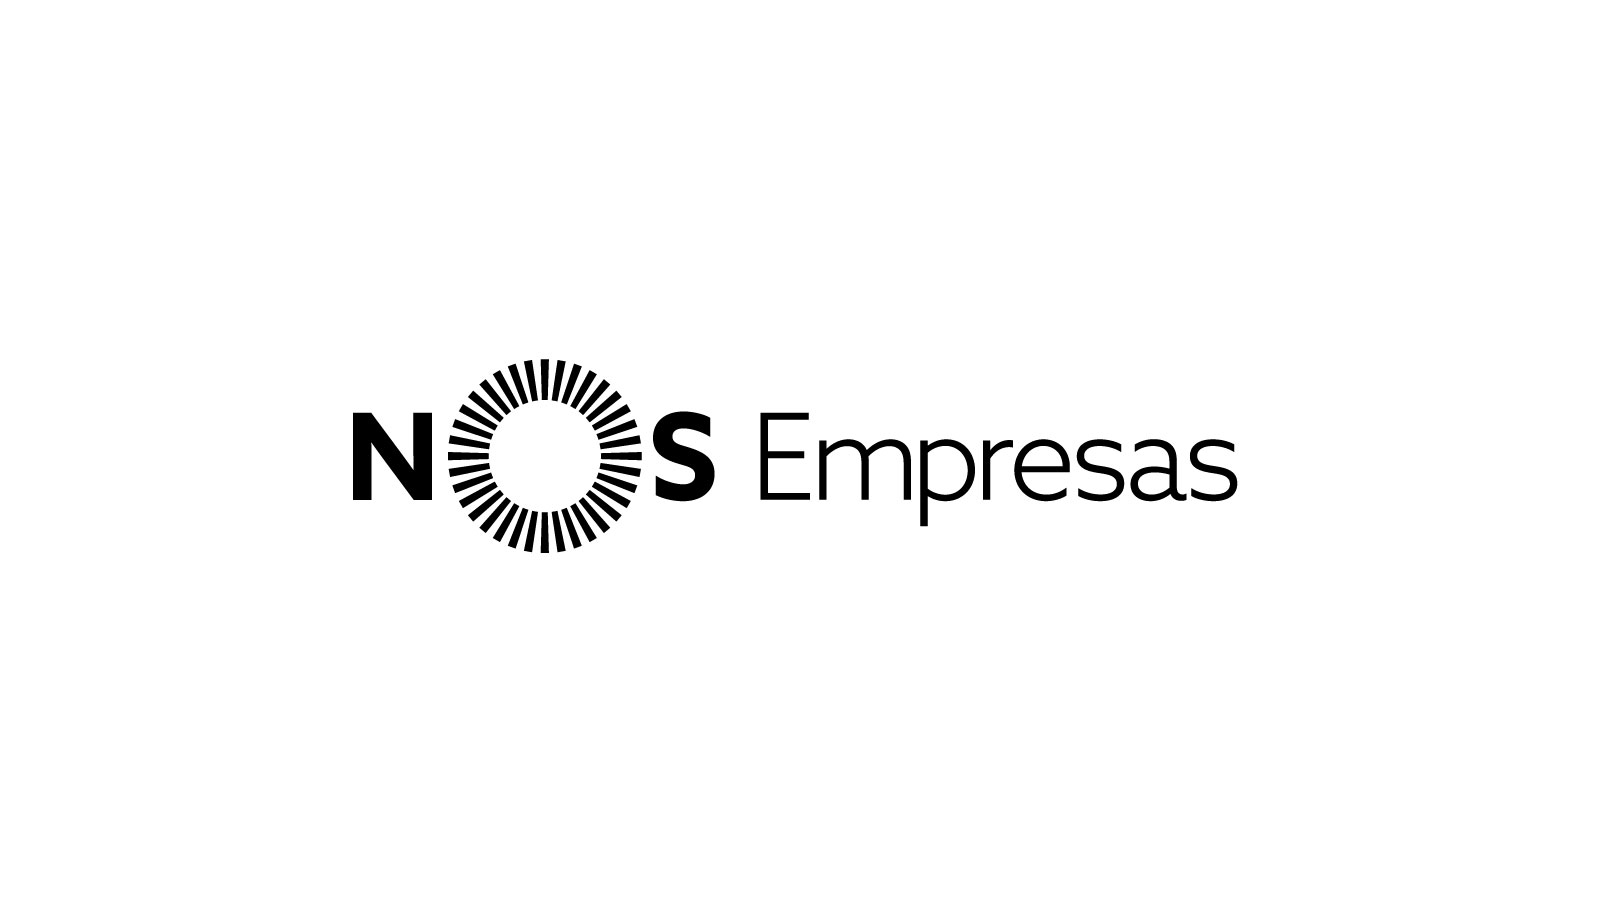 Copy of Nos Empresas logo